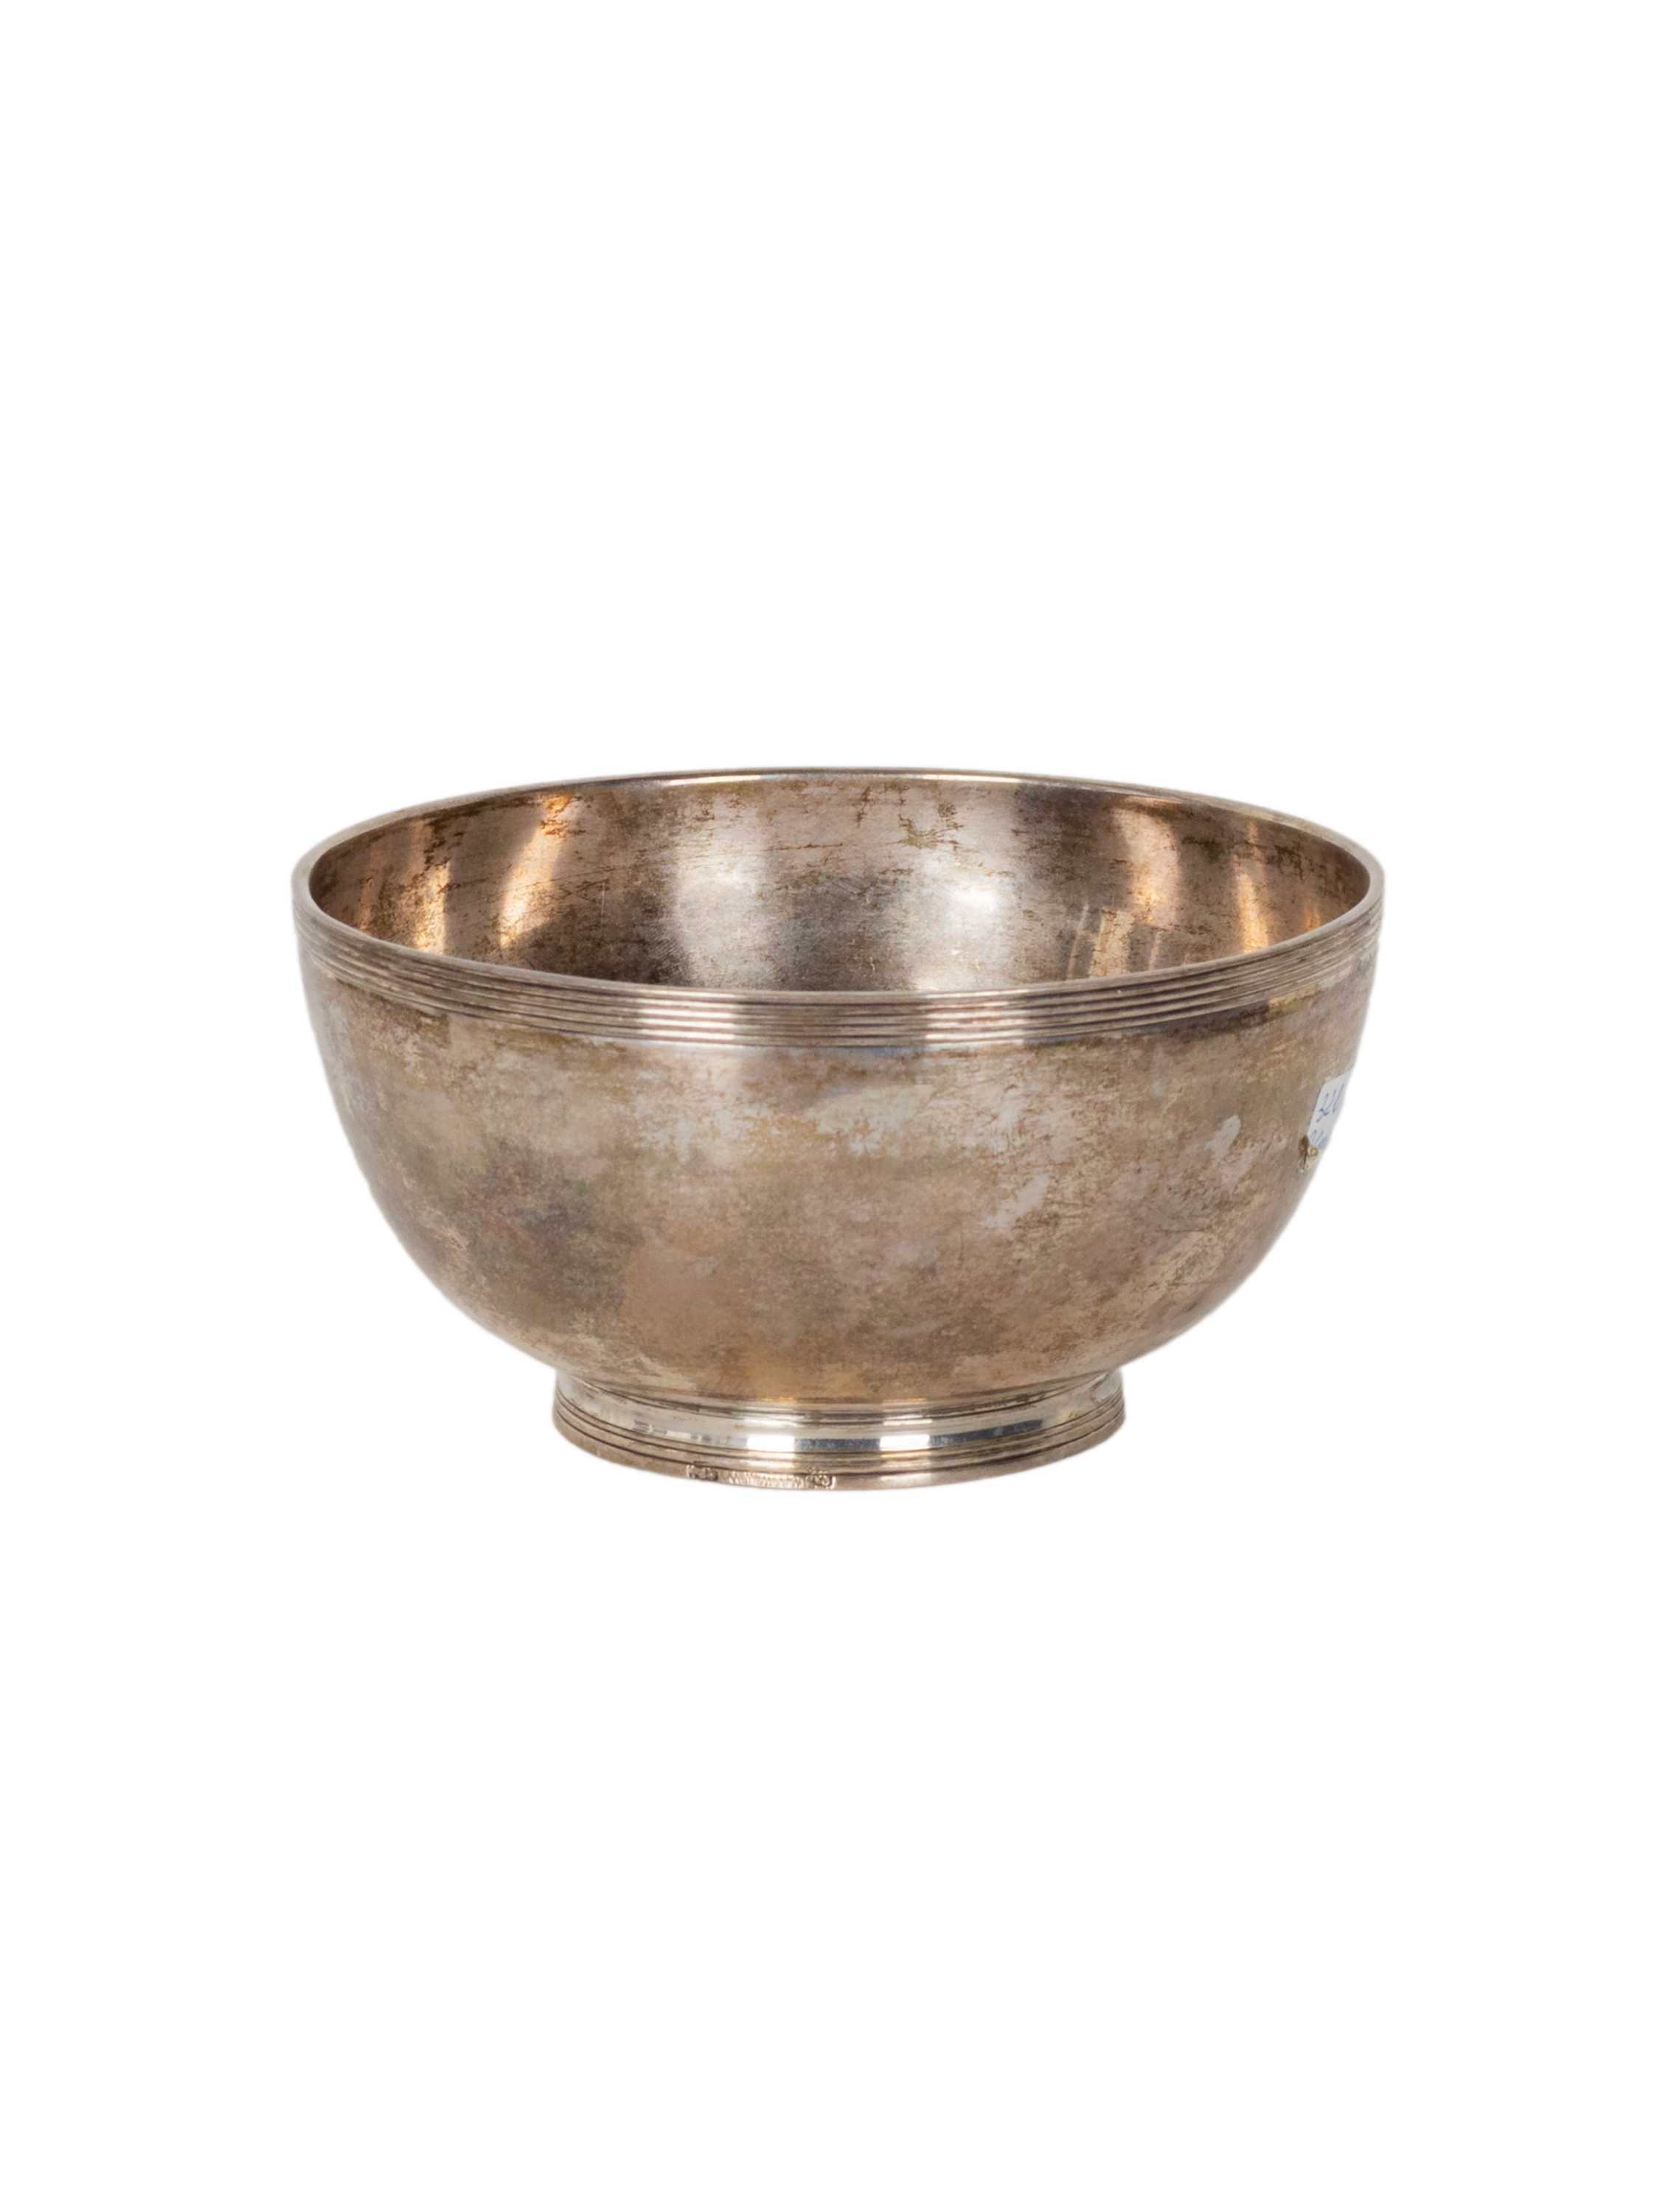 Taça salva prata coroa d José | século XVIII